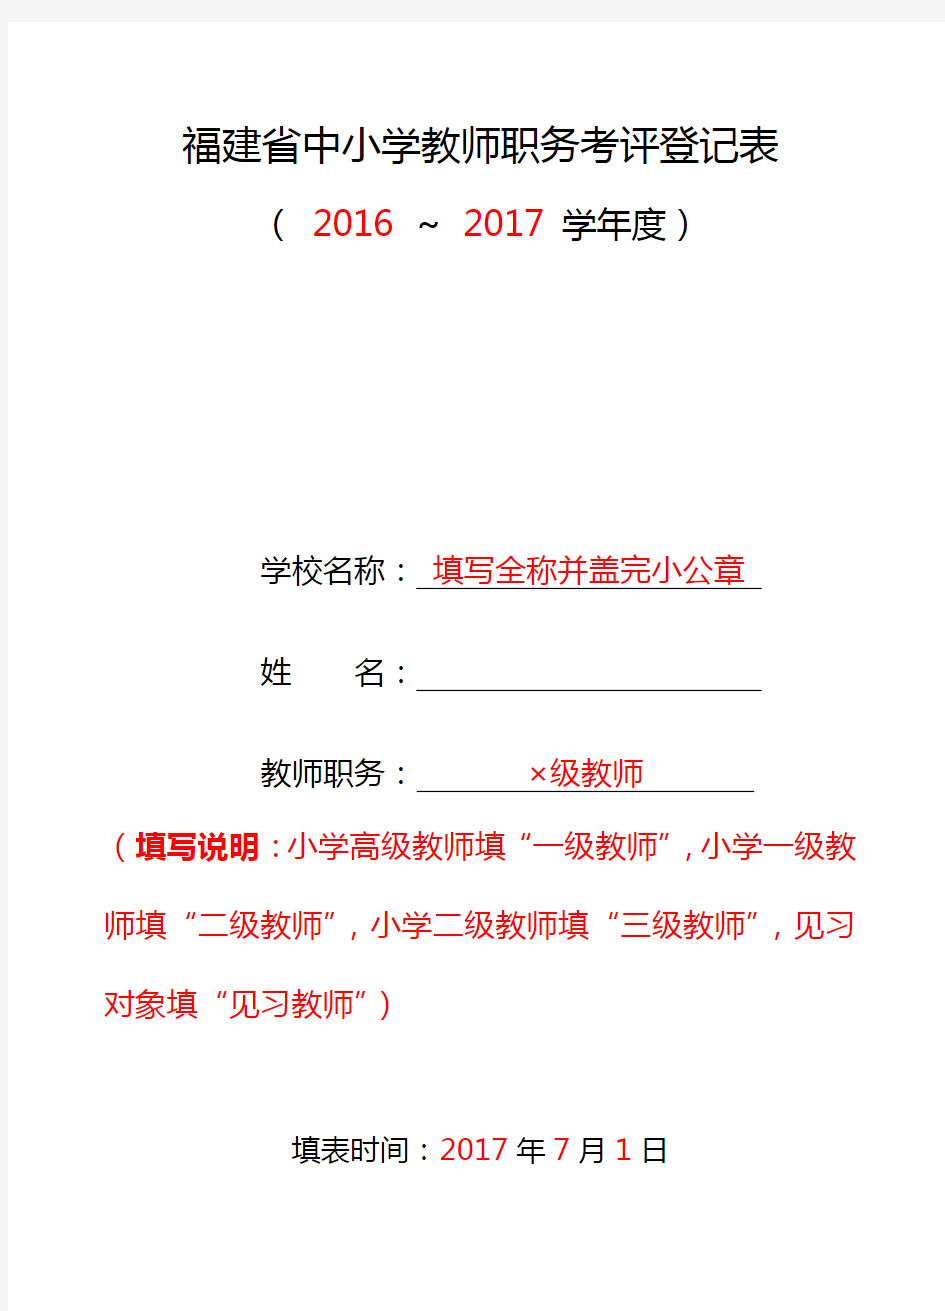 福建省中小学教师职务考评登记表(示例)